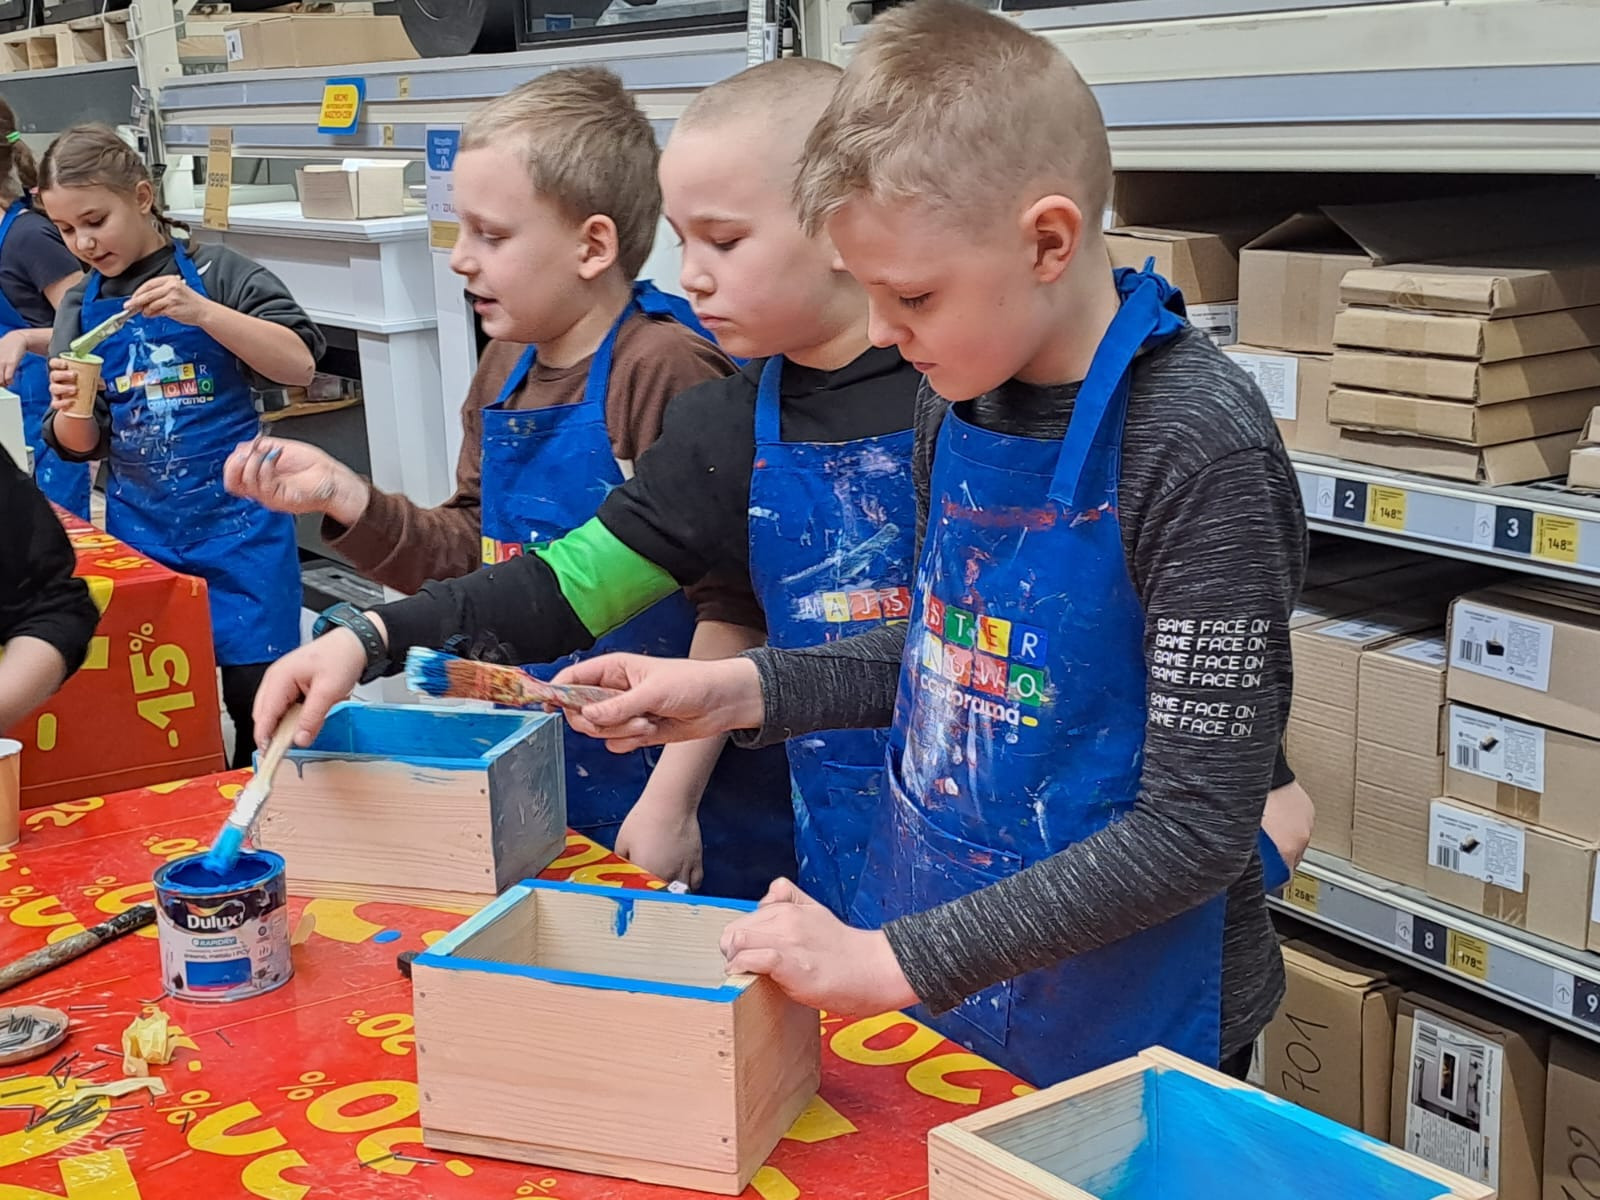 Uczniowie montują i malują drewniane pudełka podczas warsztatów w Castoramie.